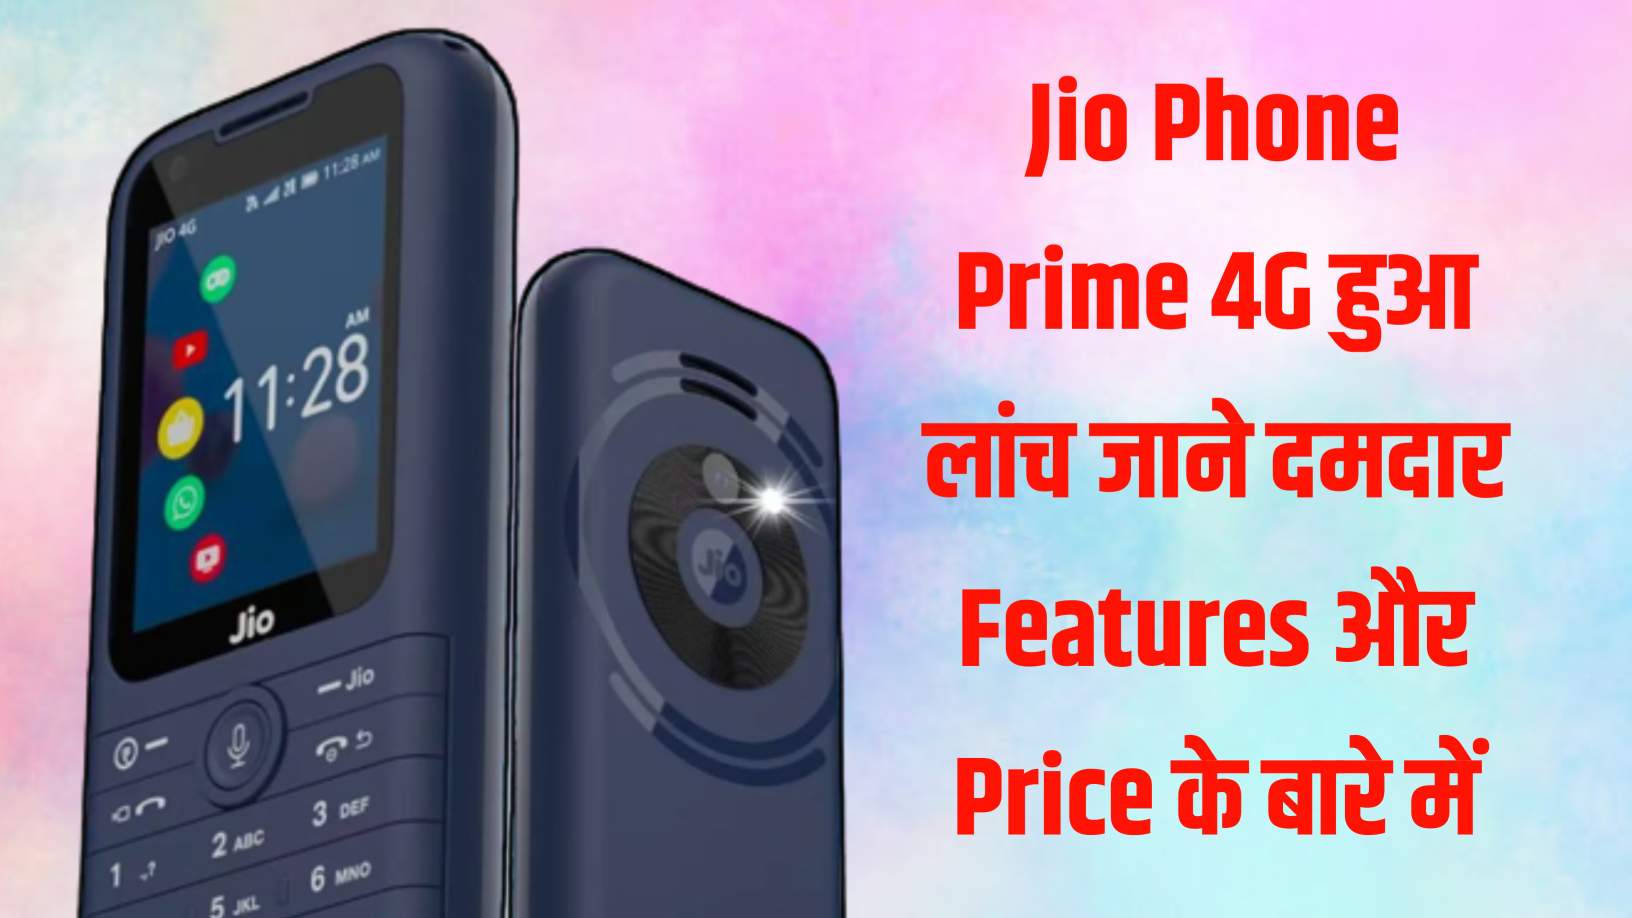 Jio Phone Prime 4G